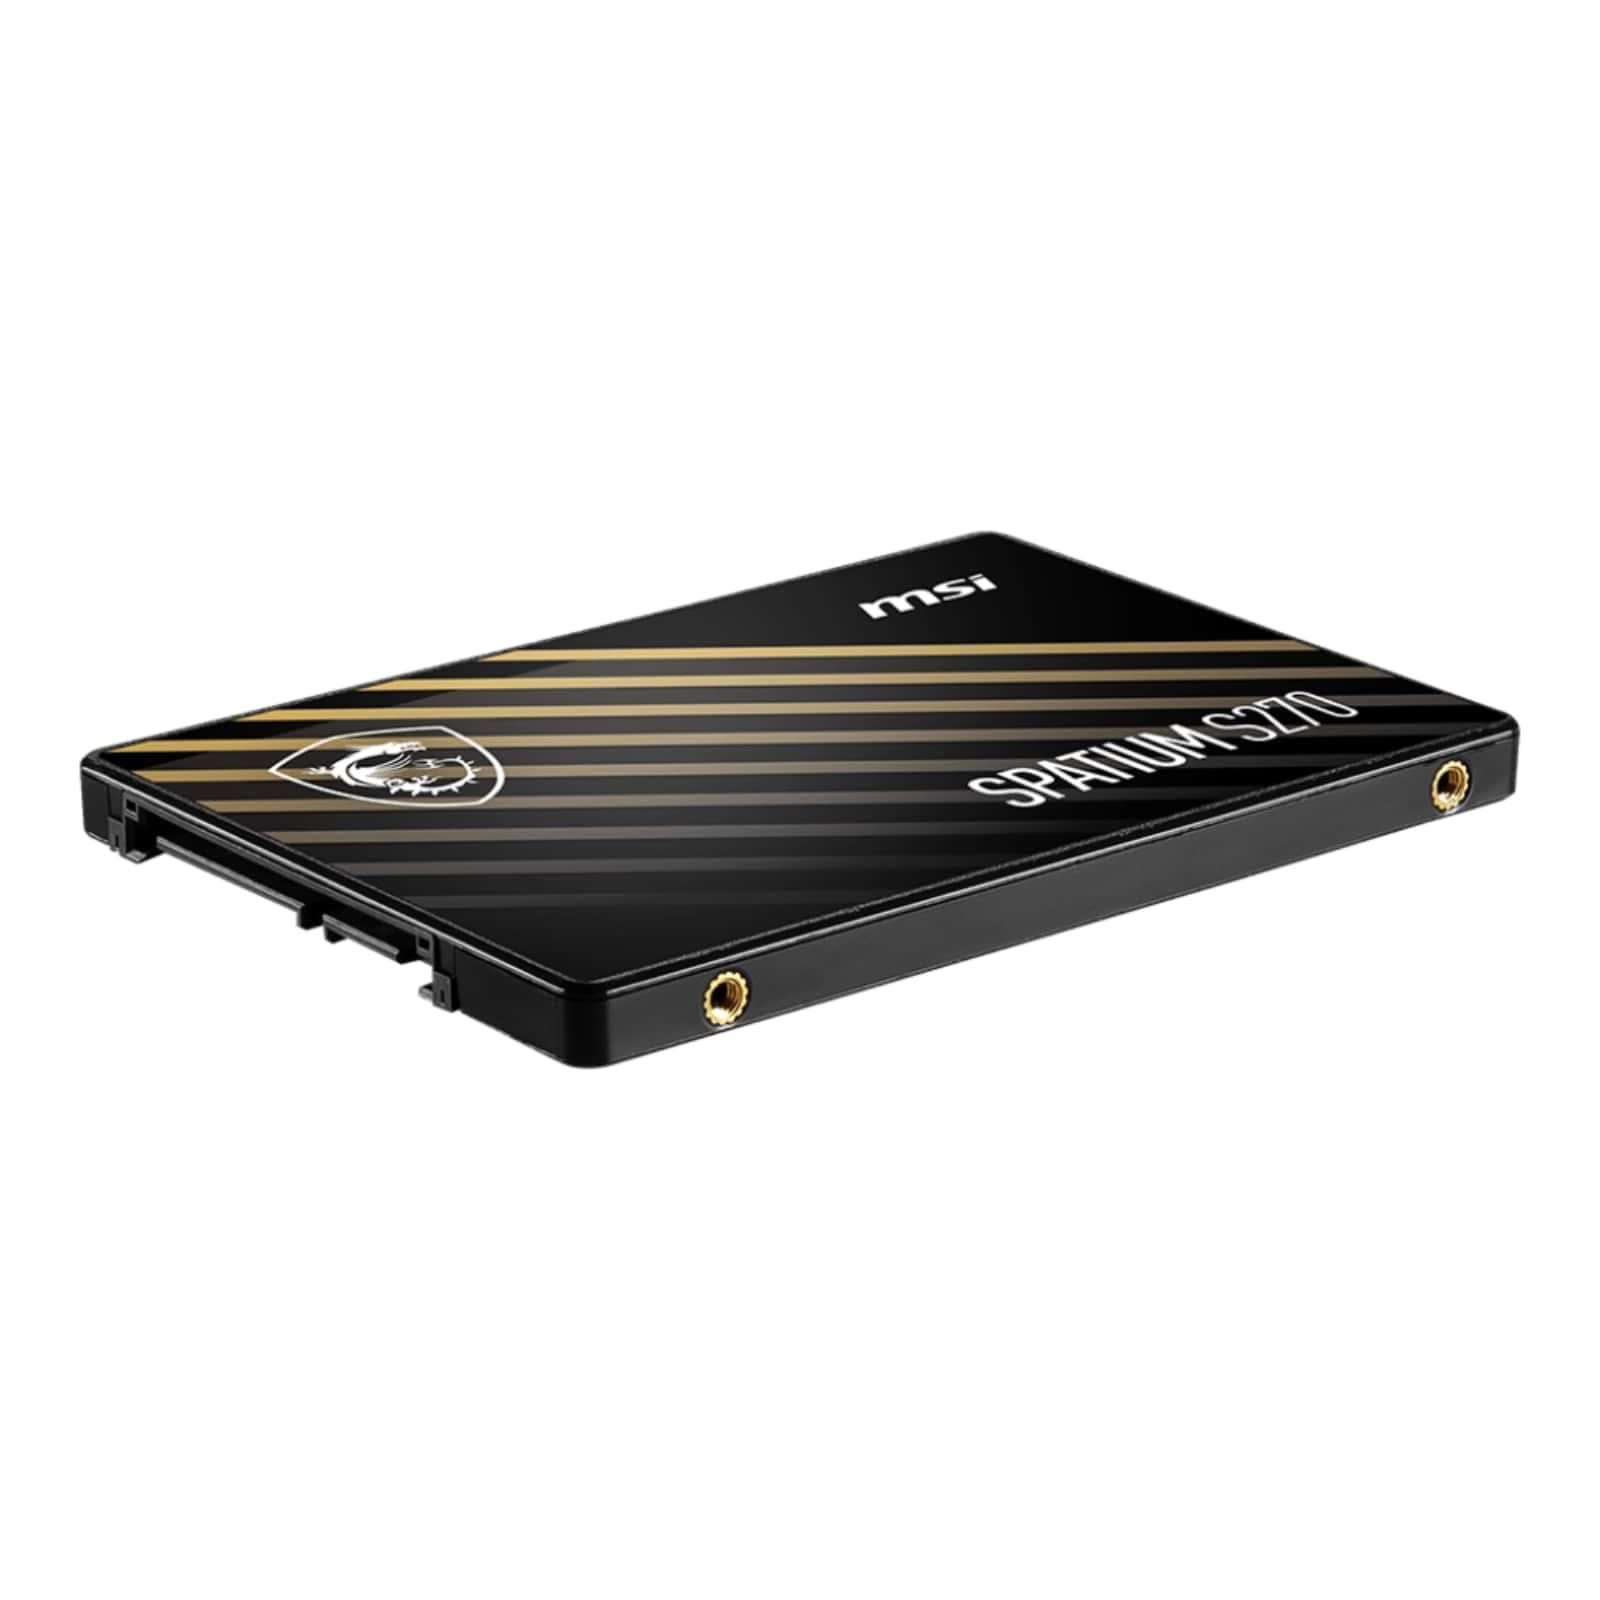 SSD MSI SPATIUM S270 SATA 2.5” 240 GB 